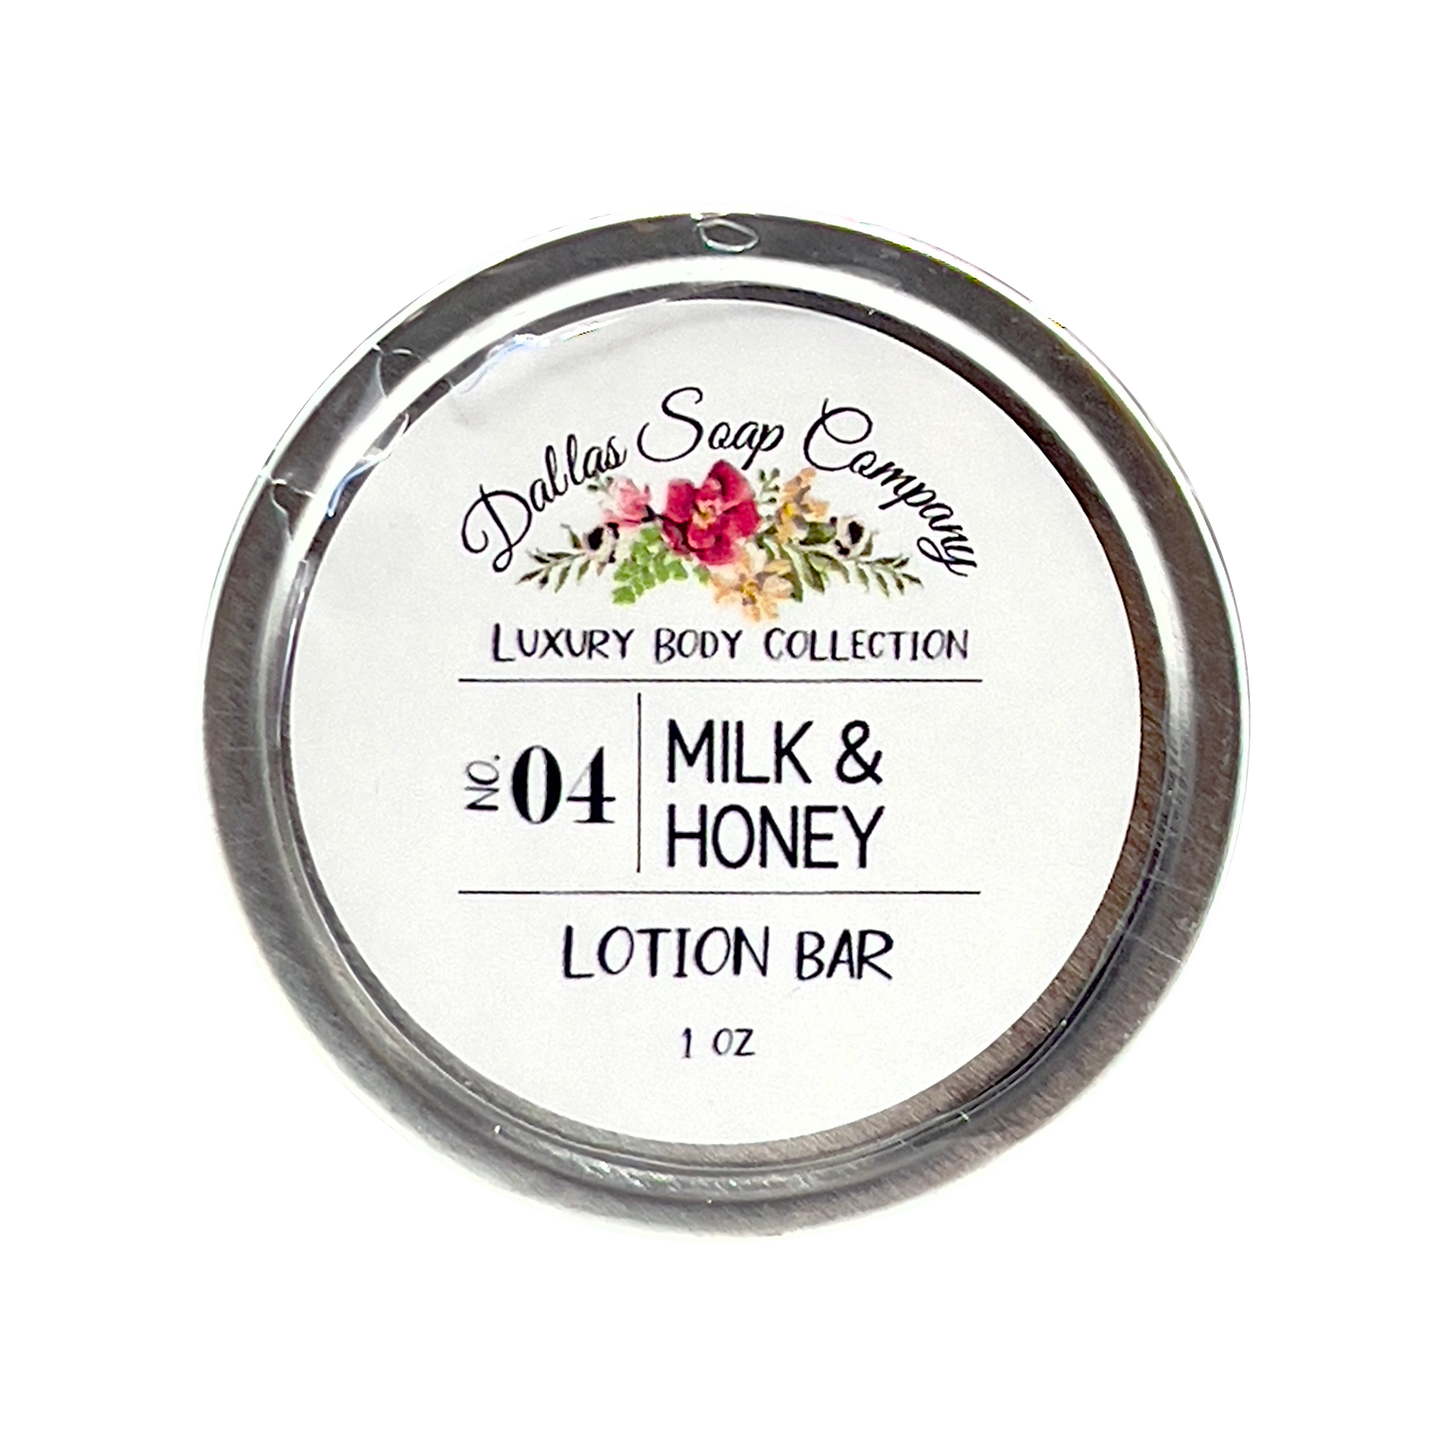 Dallas Soap Company Milk & Honey Lotion Bar